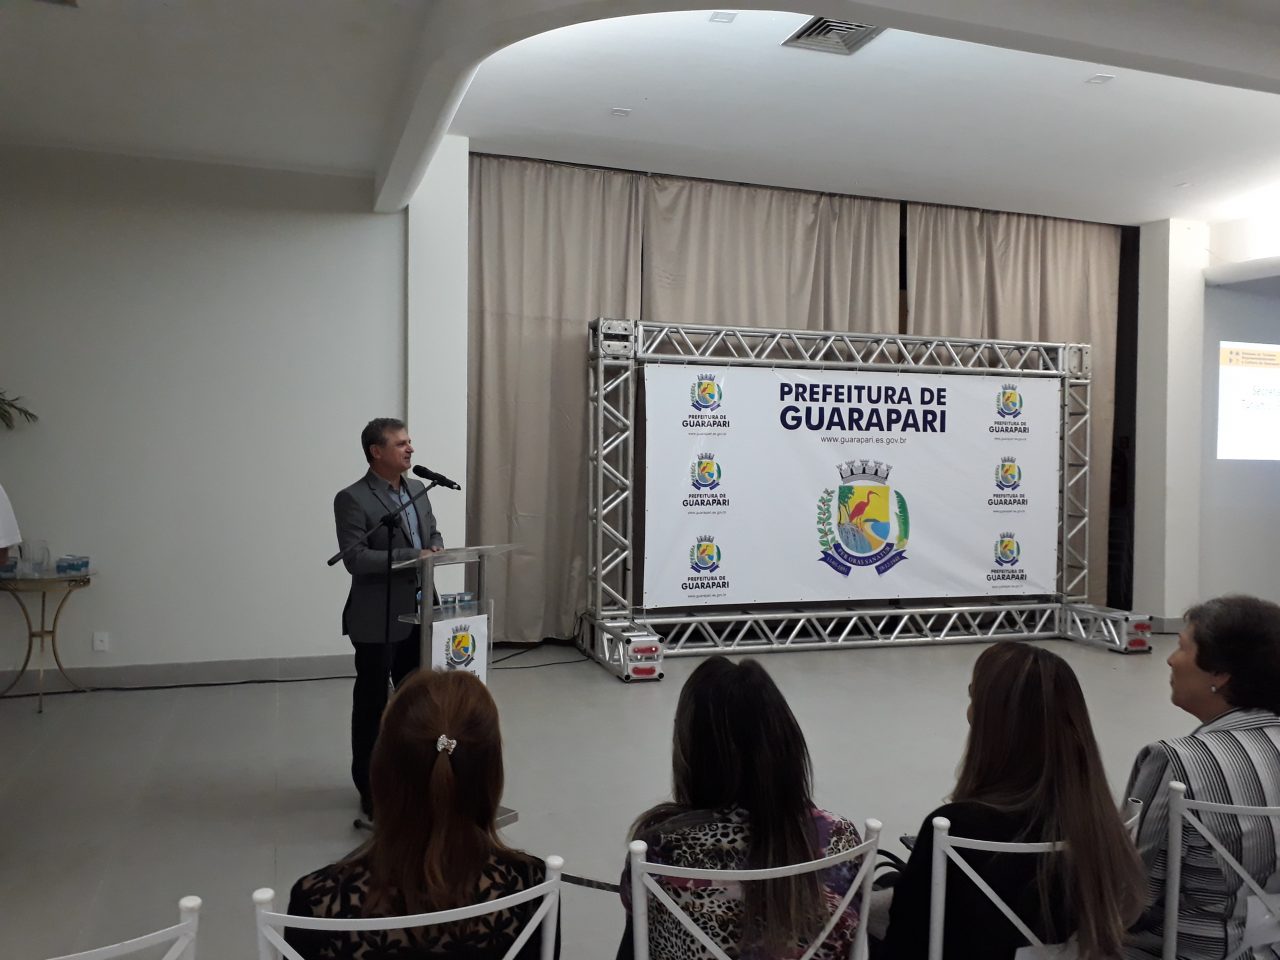 Dorval 2 - Desenvolvimento e qualificação: Esses foram os temas destacados durante abertura da 1ª Semana do Turismo de Guarapari